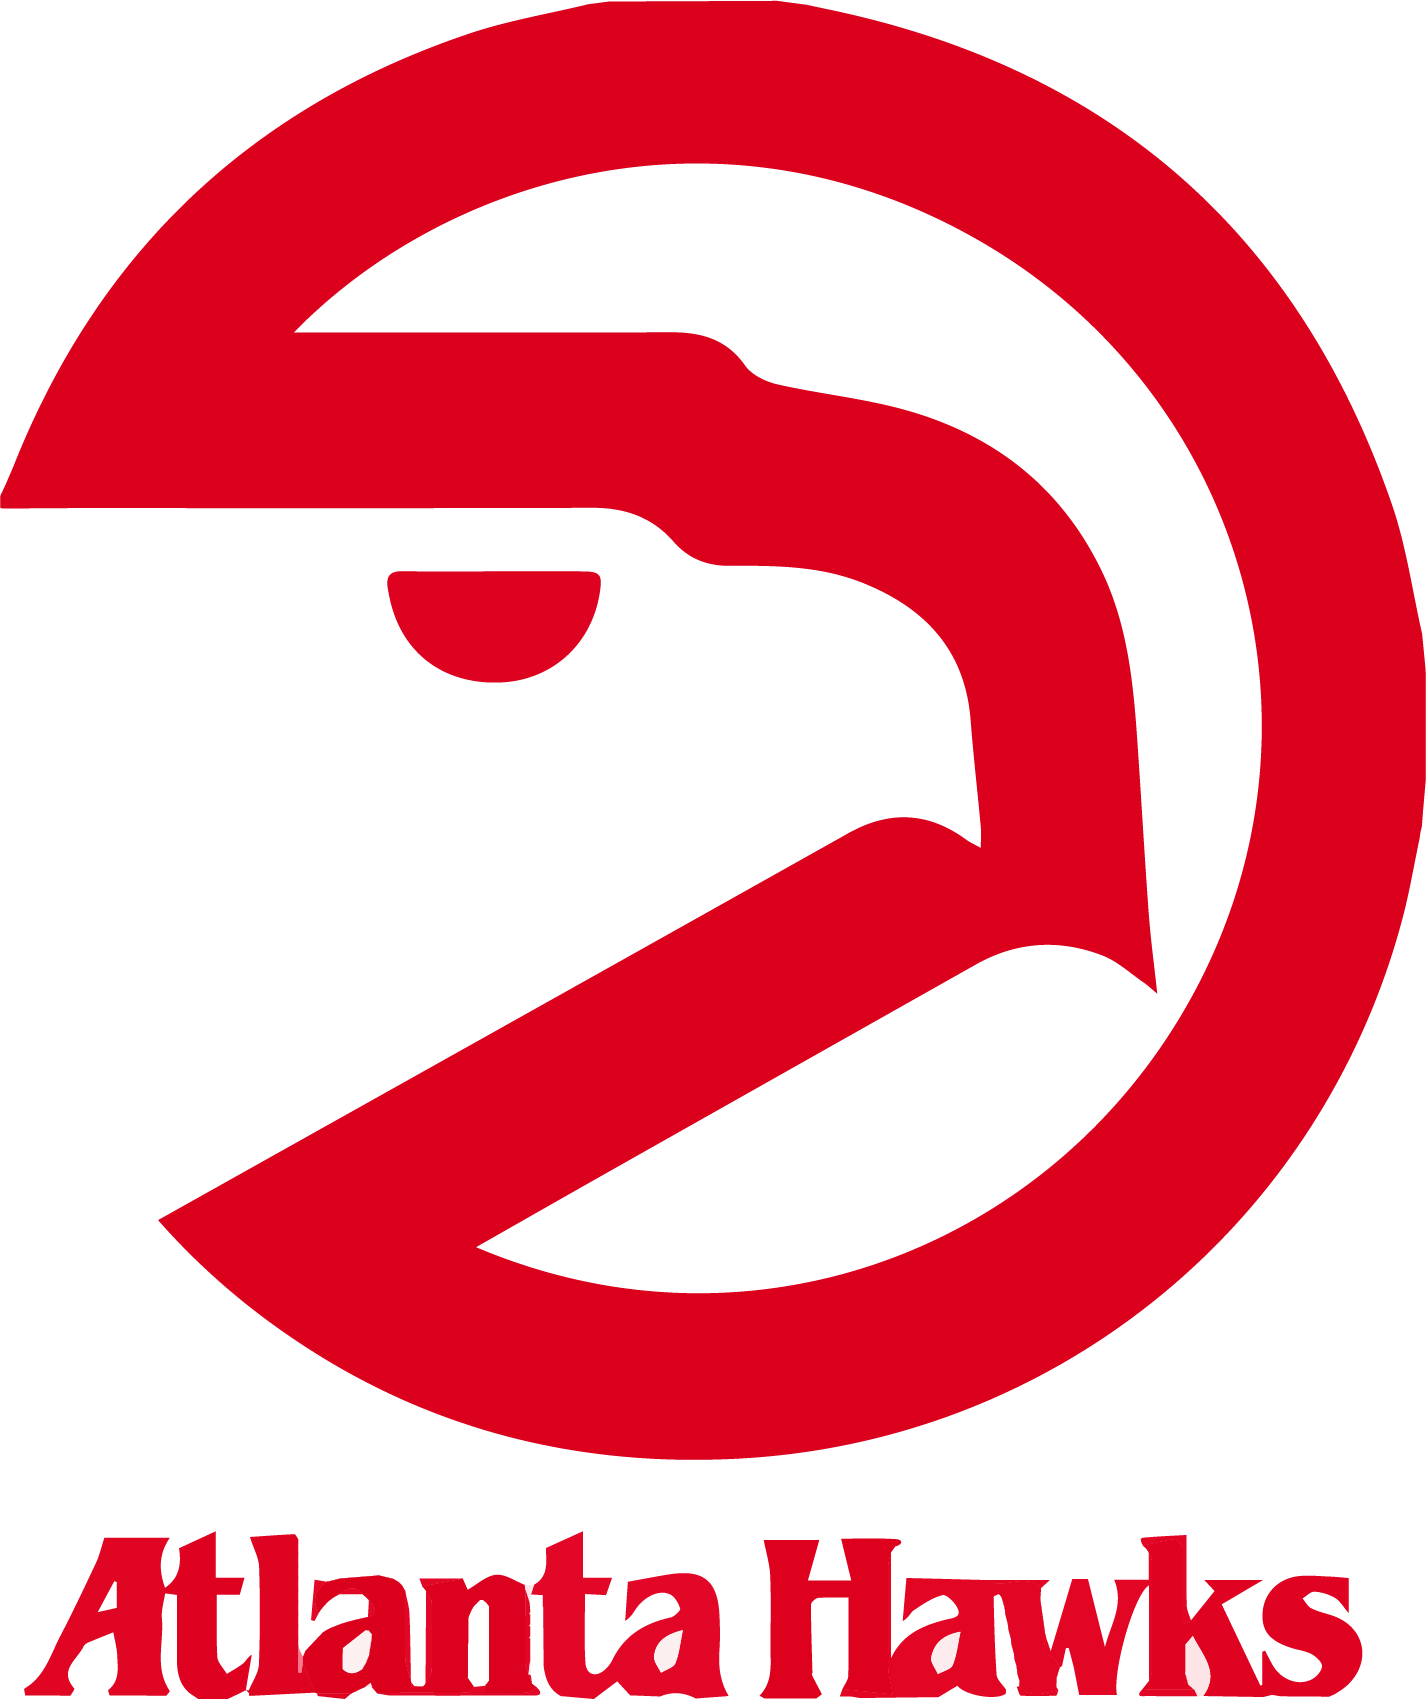 1972 - - 2017 Atlanta Hawks Logo (1426x1699), Png Download